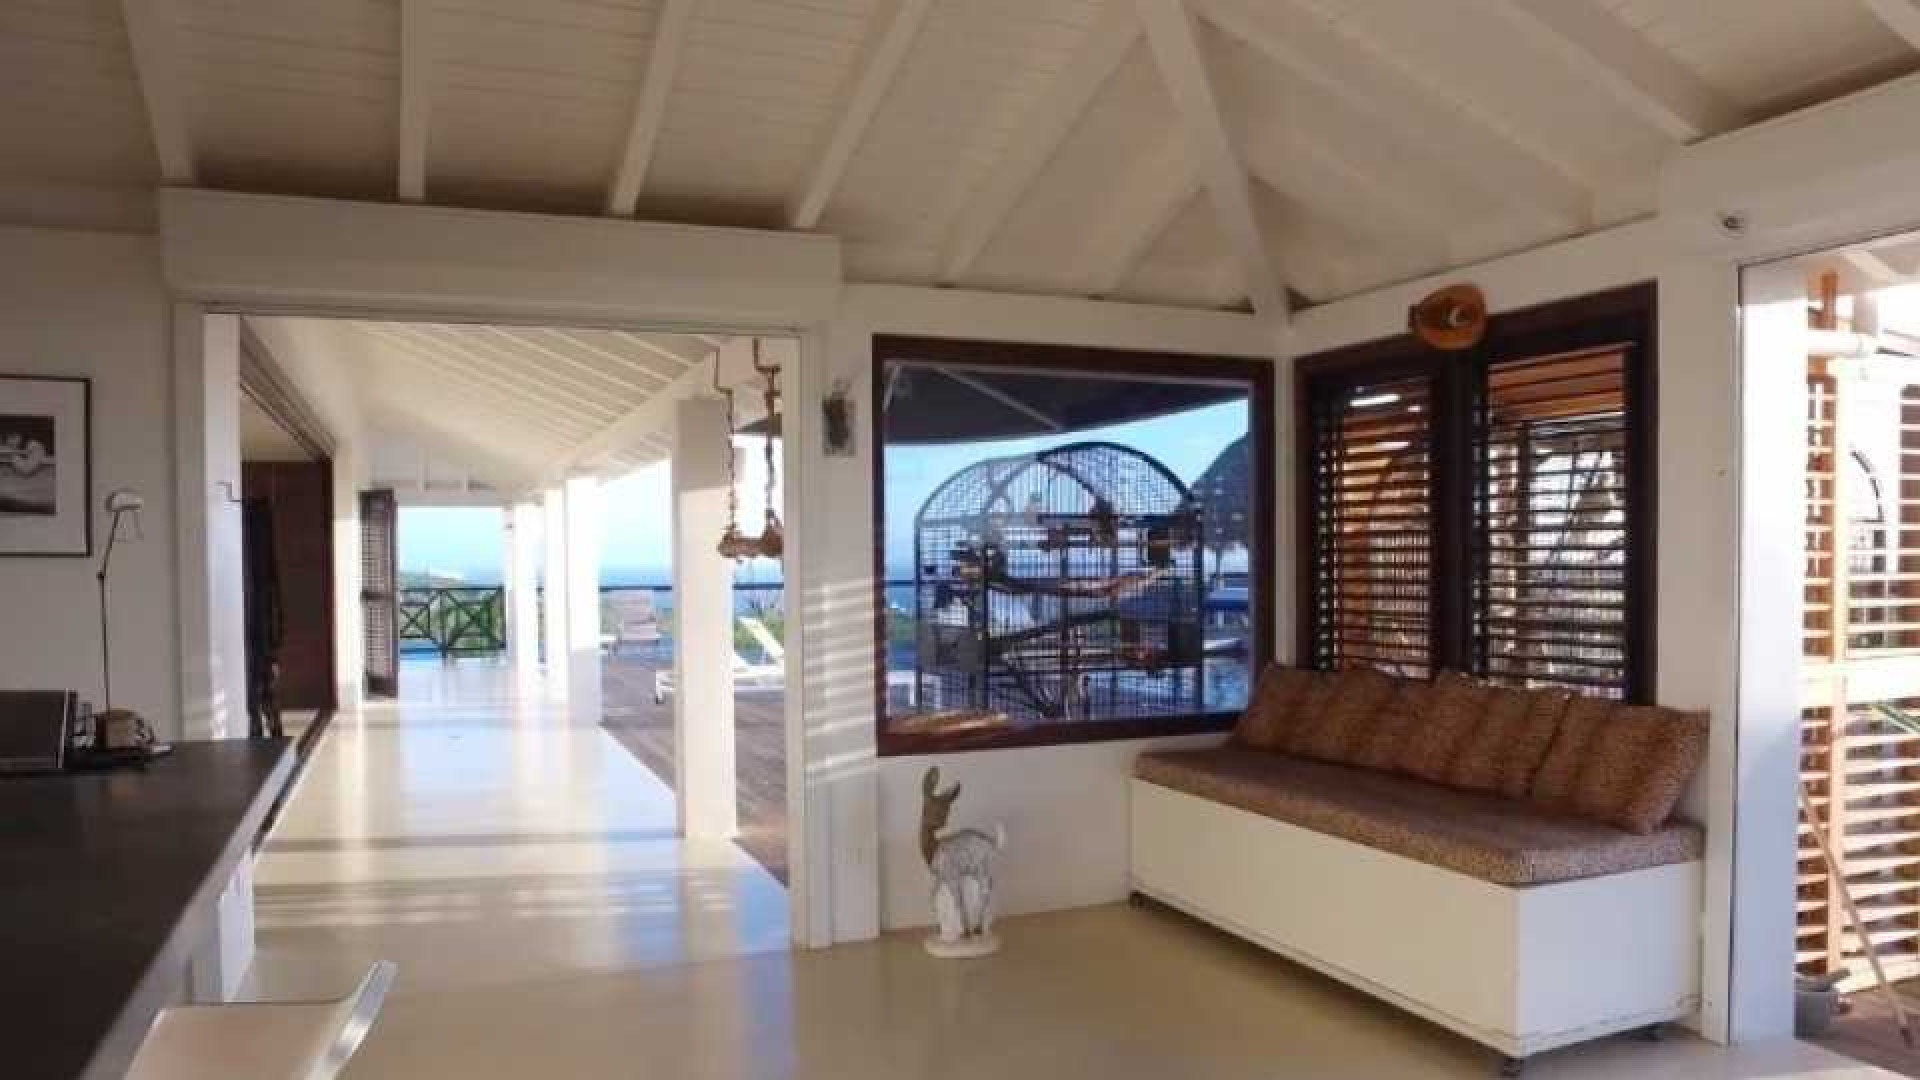 Barry Hay verlaagt vraagprijs van zijn miljoenen villa op Curacao. Zie foto's 7